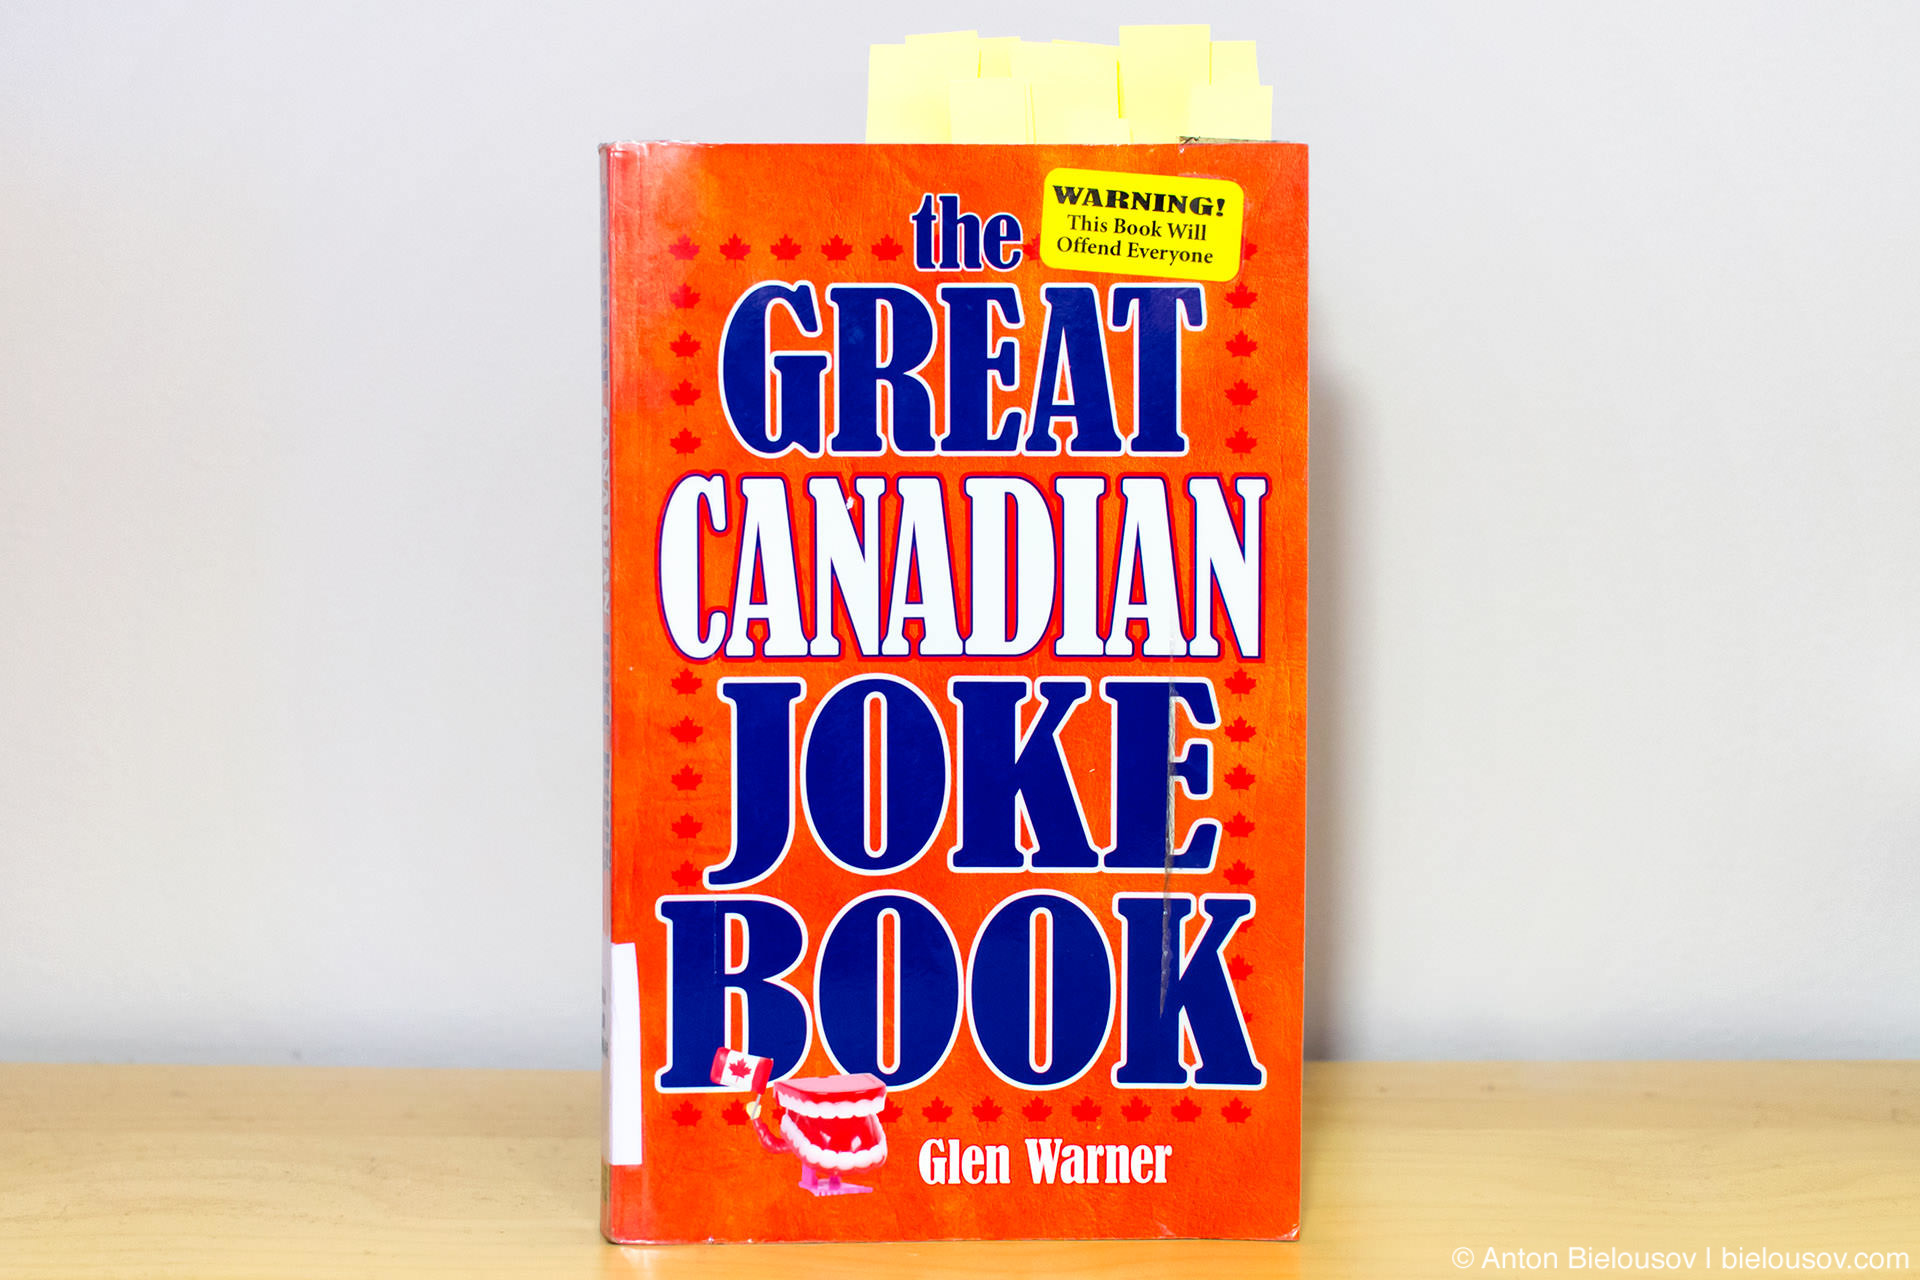 The Great Canadian Joke Book by Glen Warner